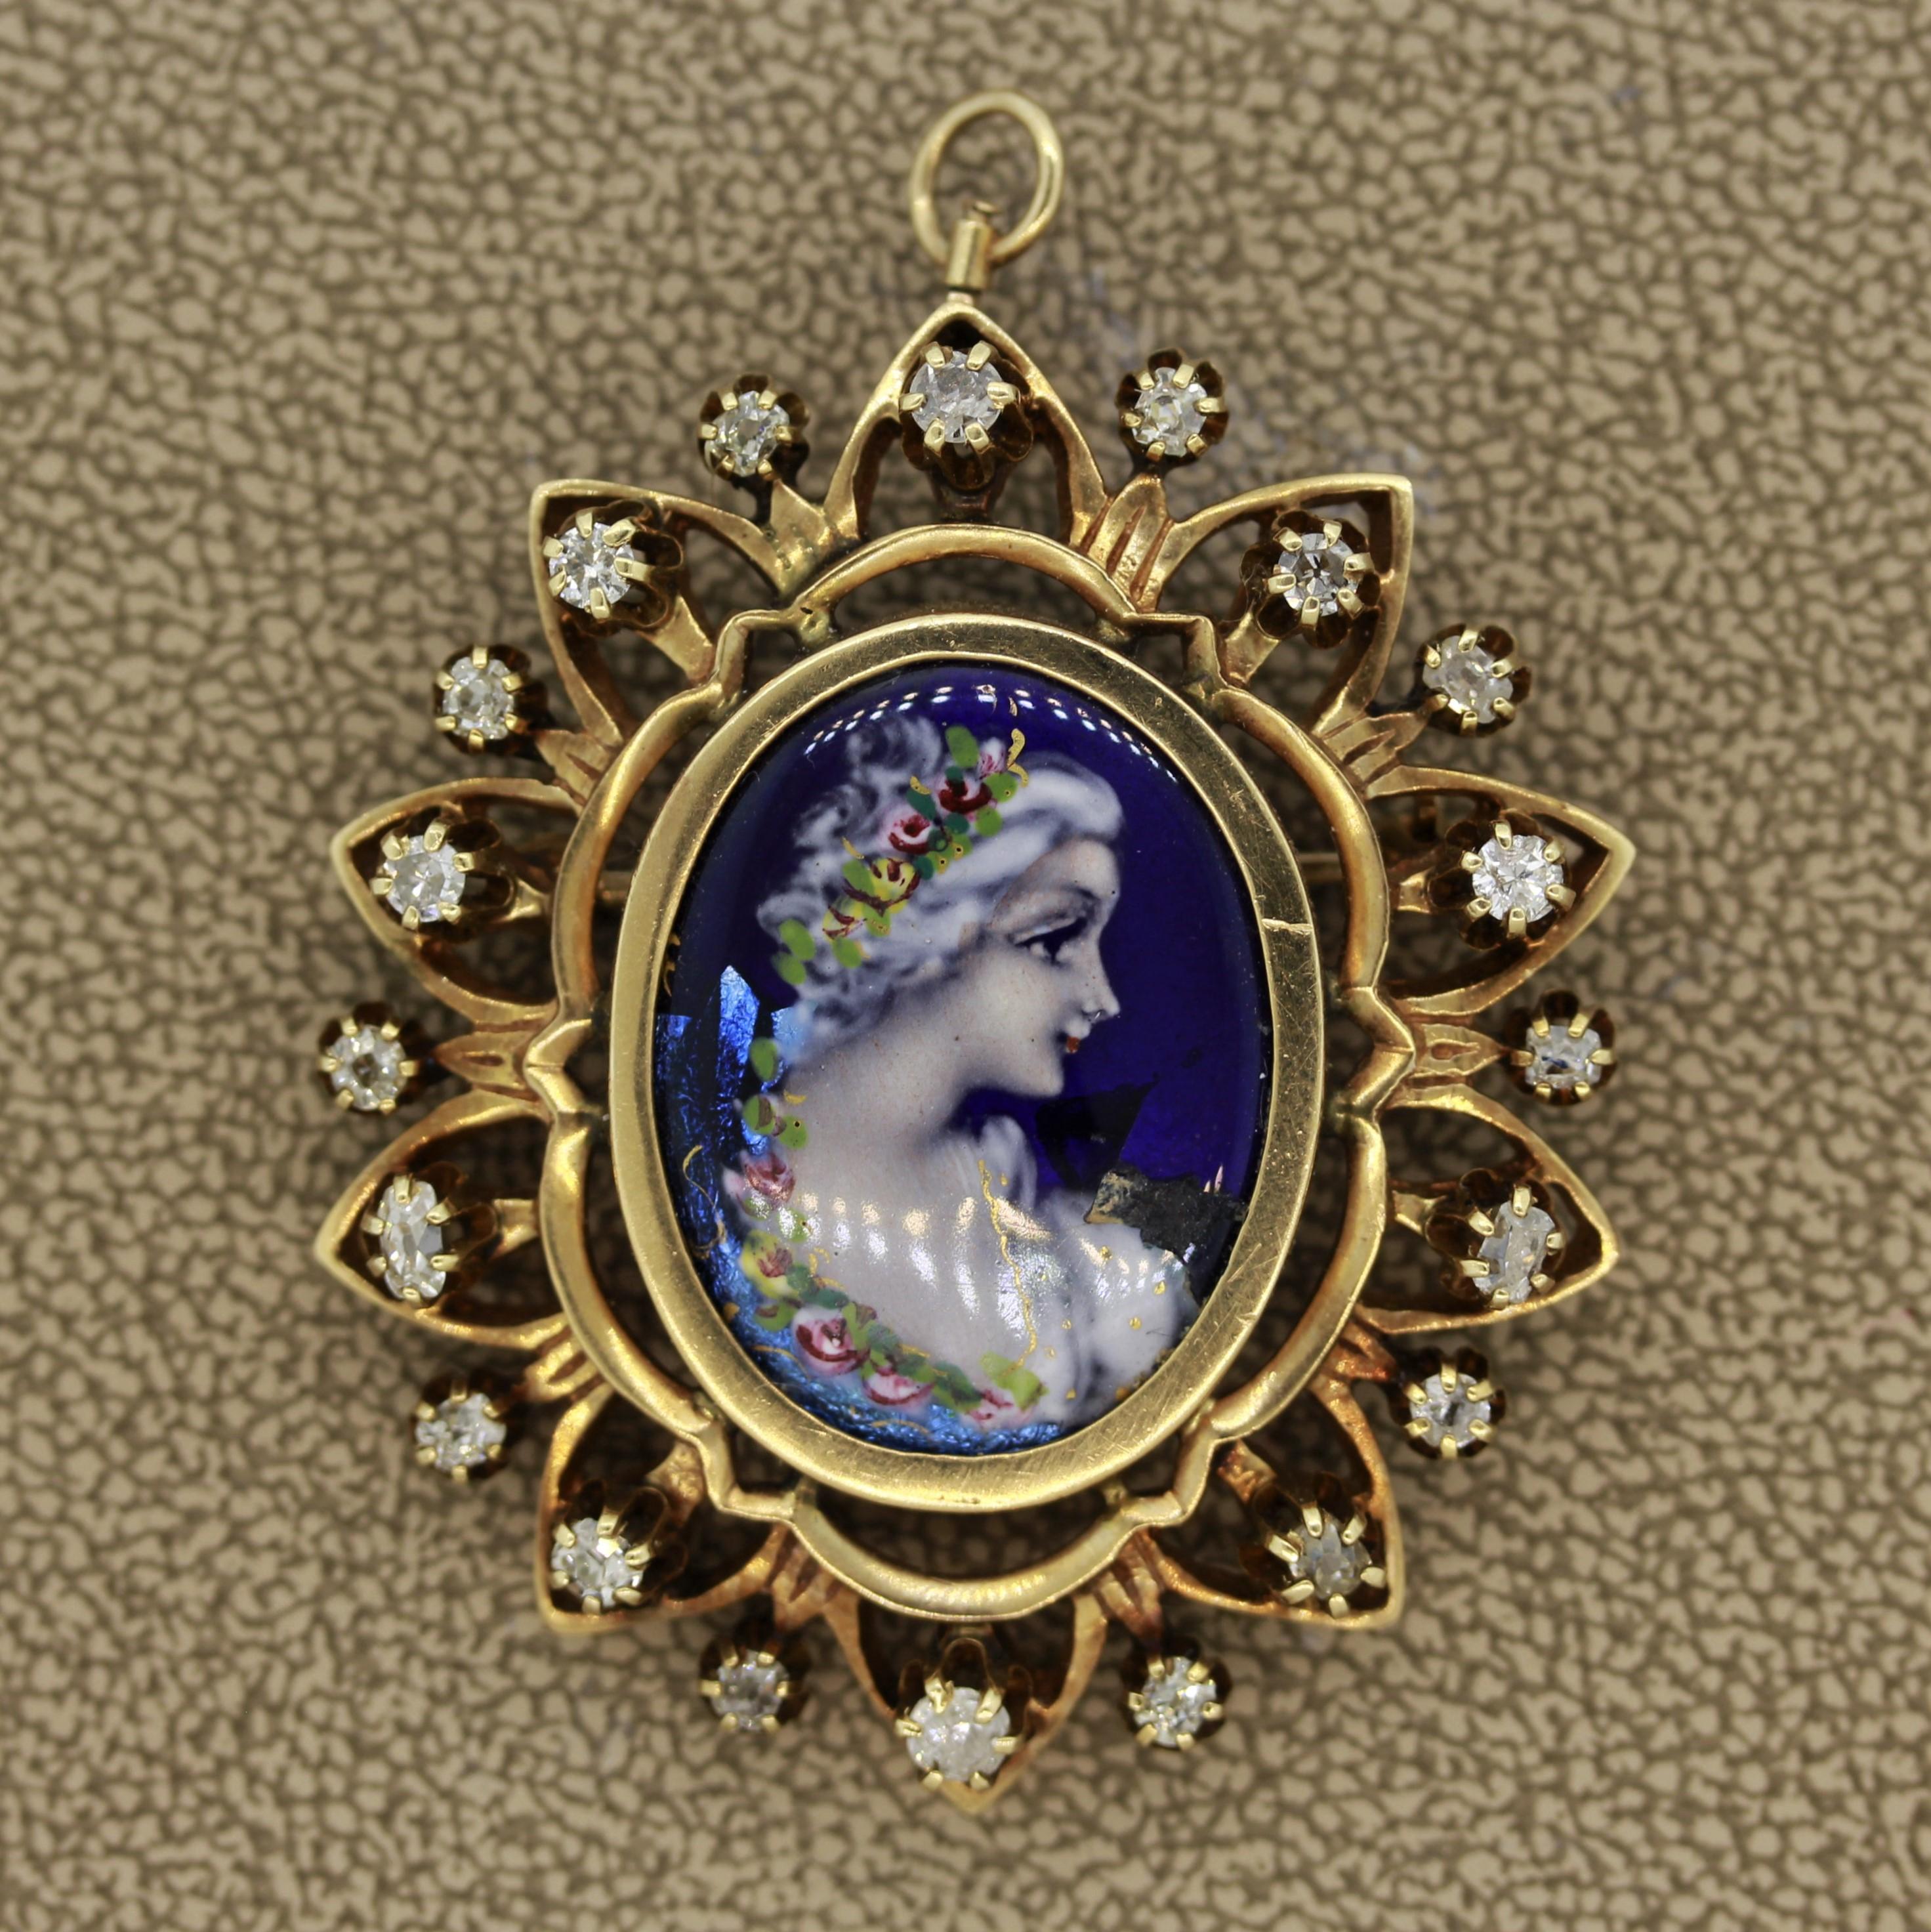 Ein schönes Beispiel für viktorianisches Design. Diese Kostbarkeit aus dem 19. Jahrhundert zeigt ein handbemaltes Porzellan, das eine königliche Frau in einem eleganten Kleid und mit Blumen im Haar darstellt. Die Fassung aus 14 Karat Gelbgold ist